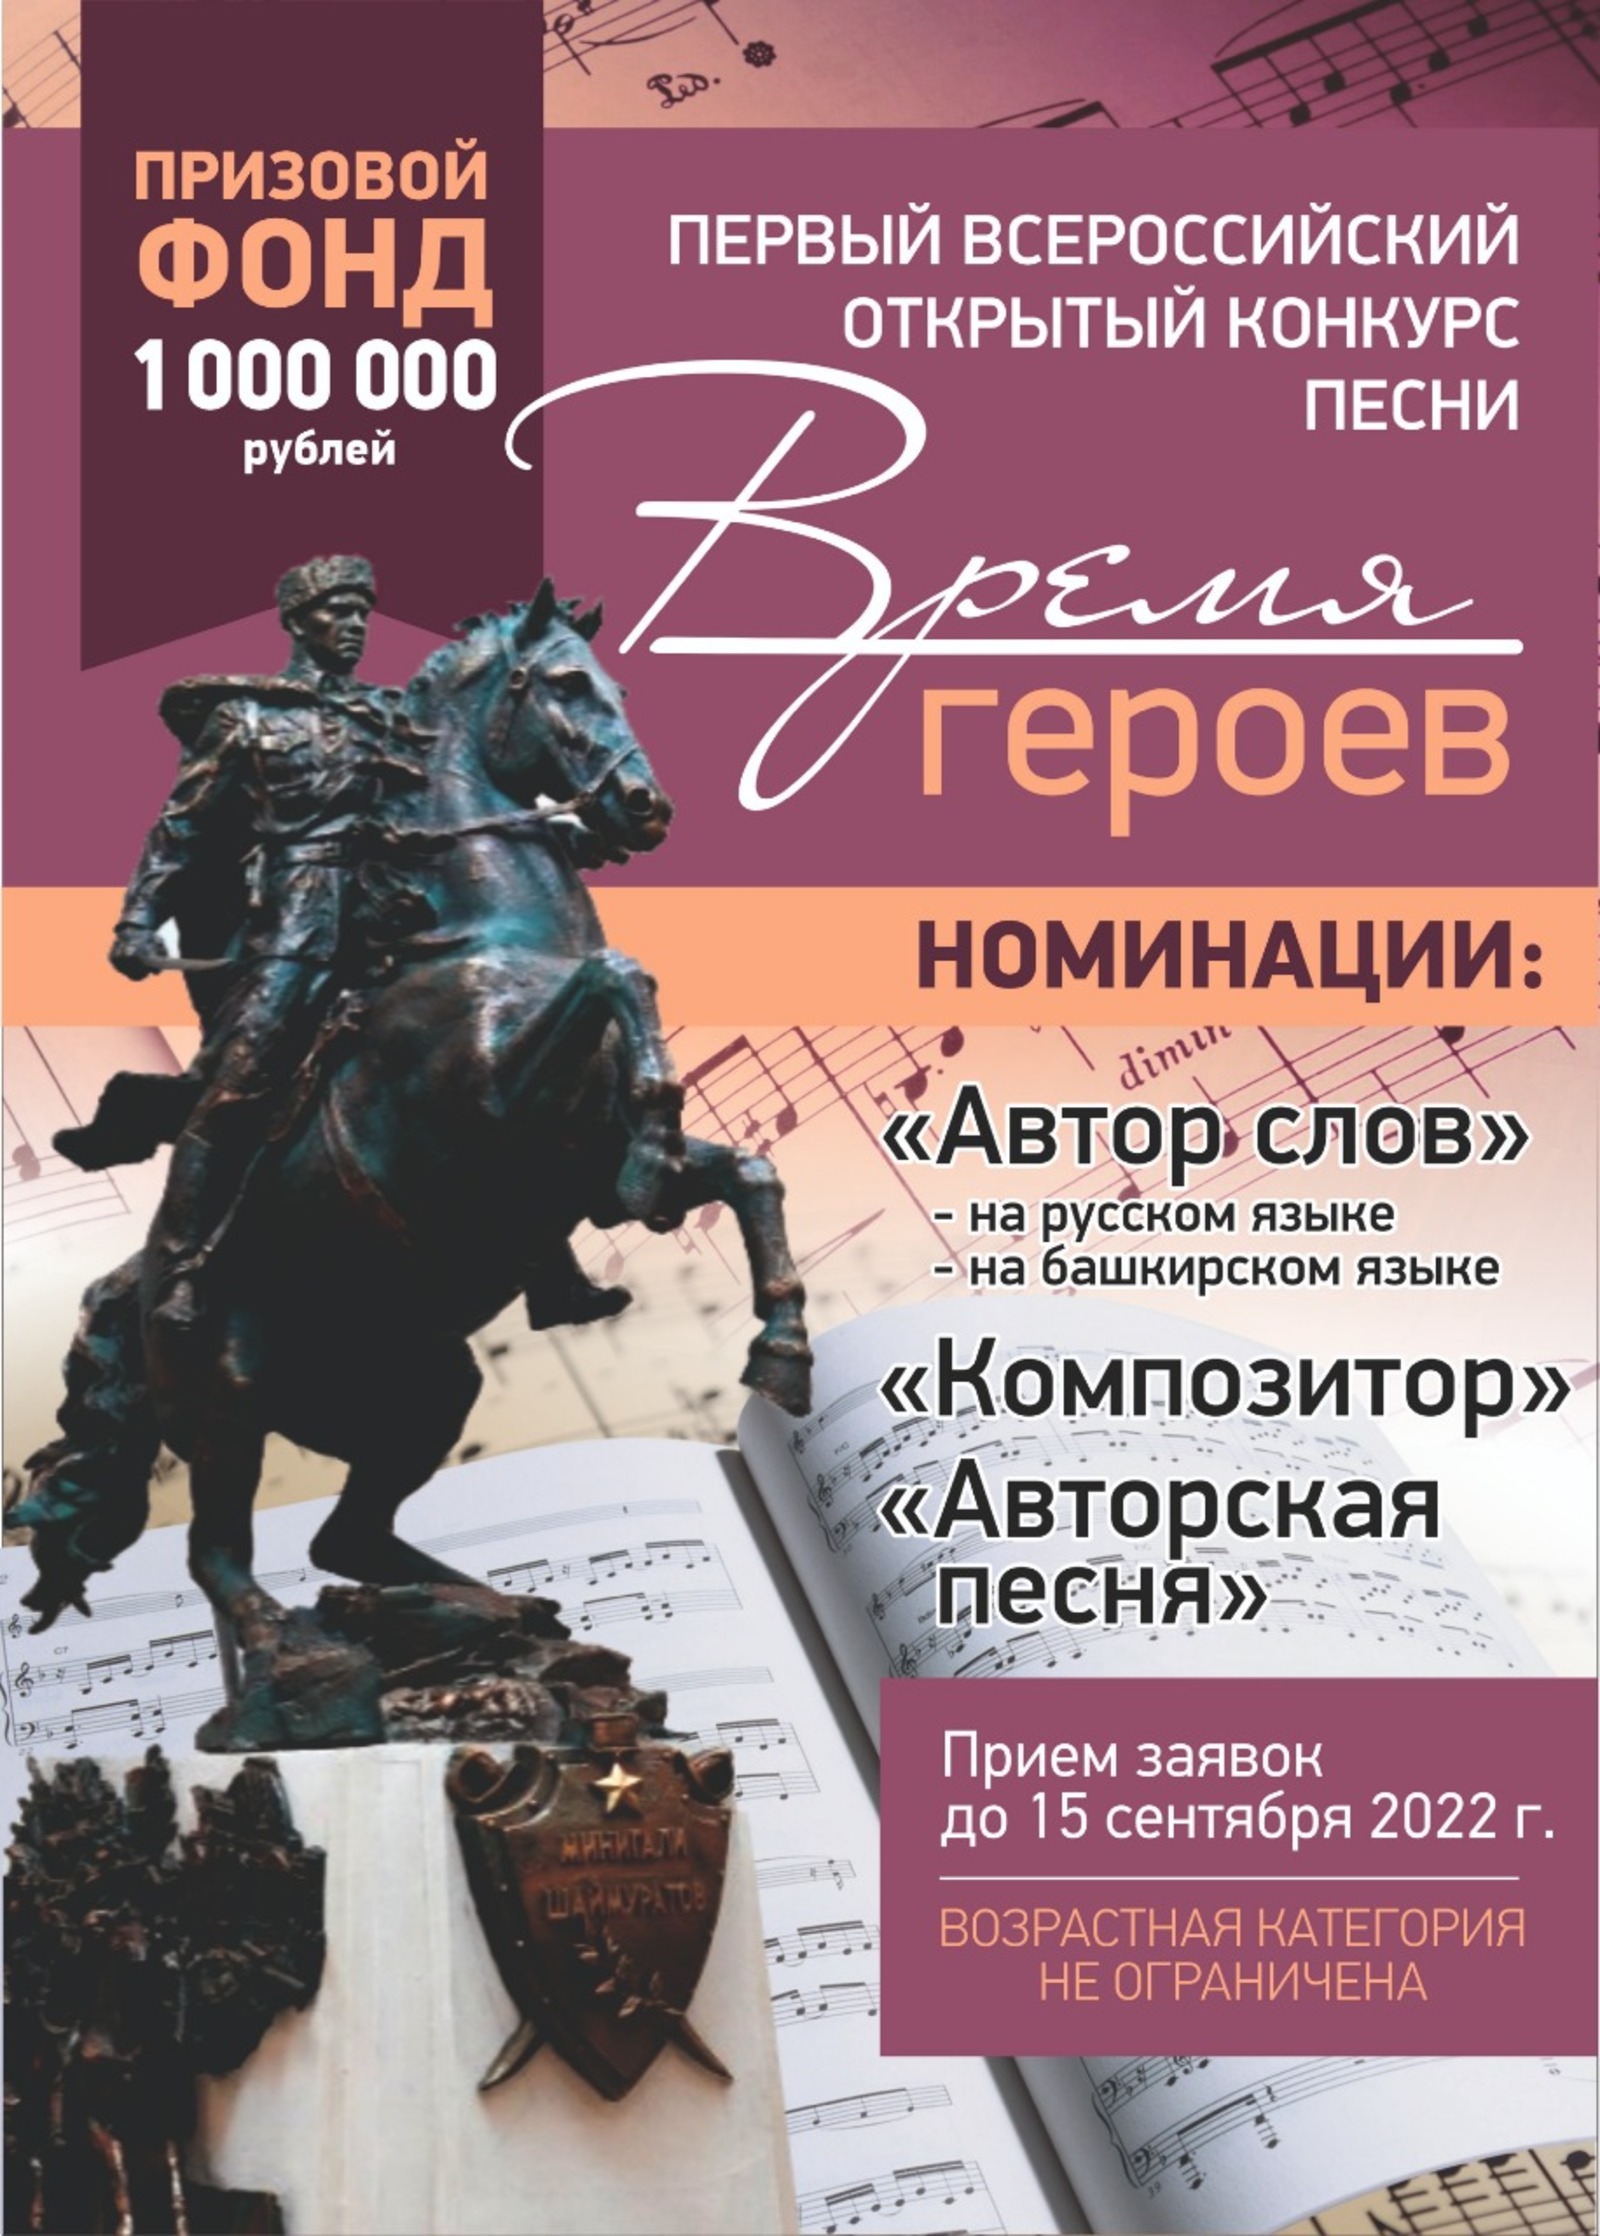 Впервые в Башкирии пройдет Первый Всероссийский открытый конкурс песни «Время героев»